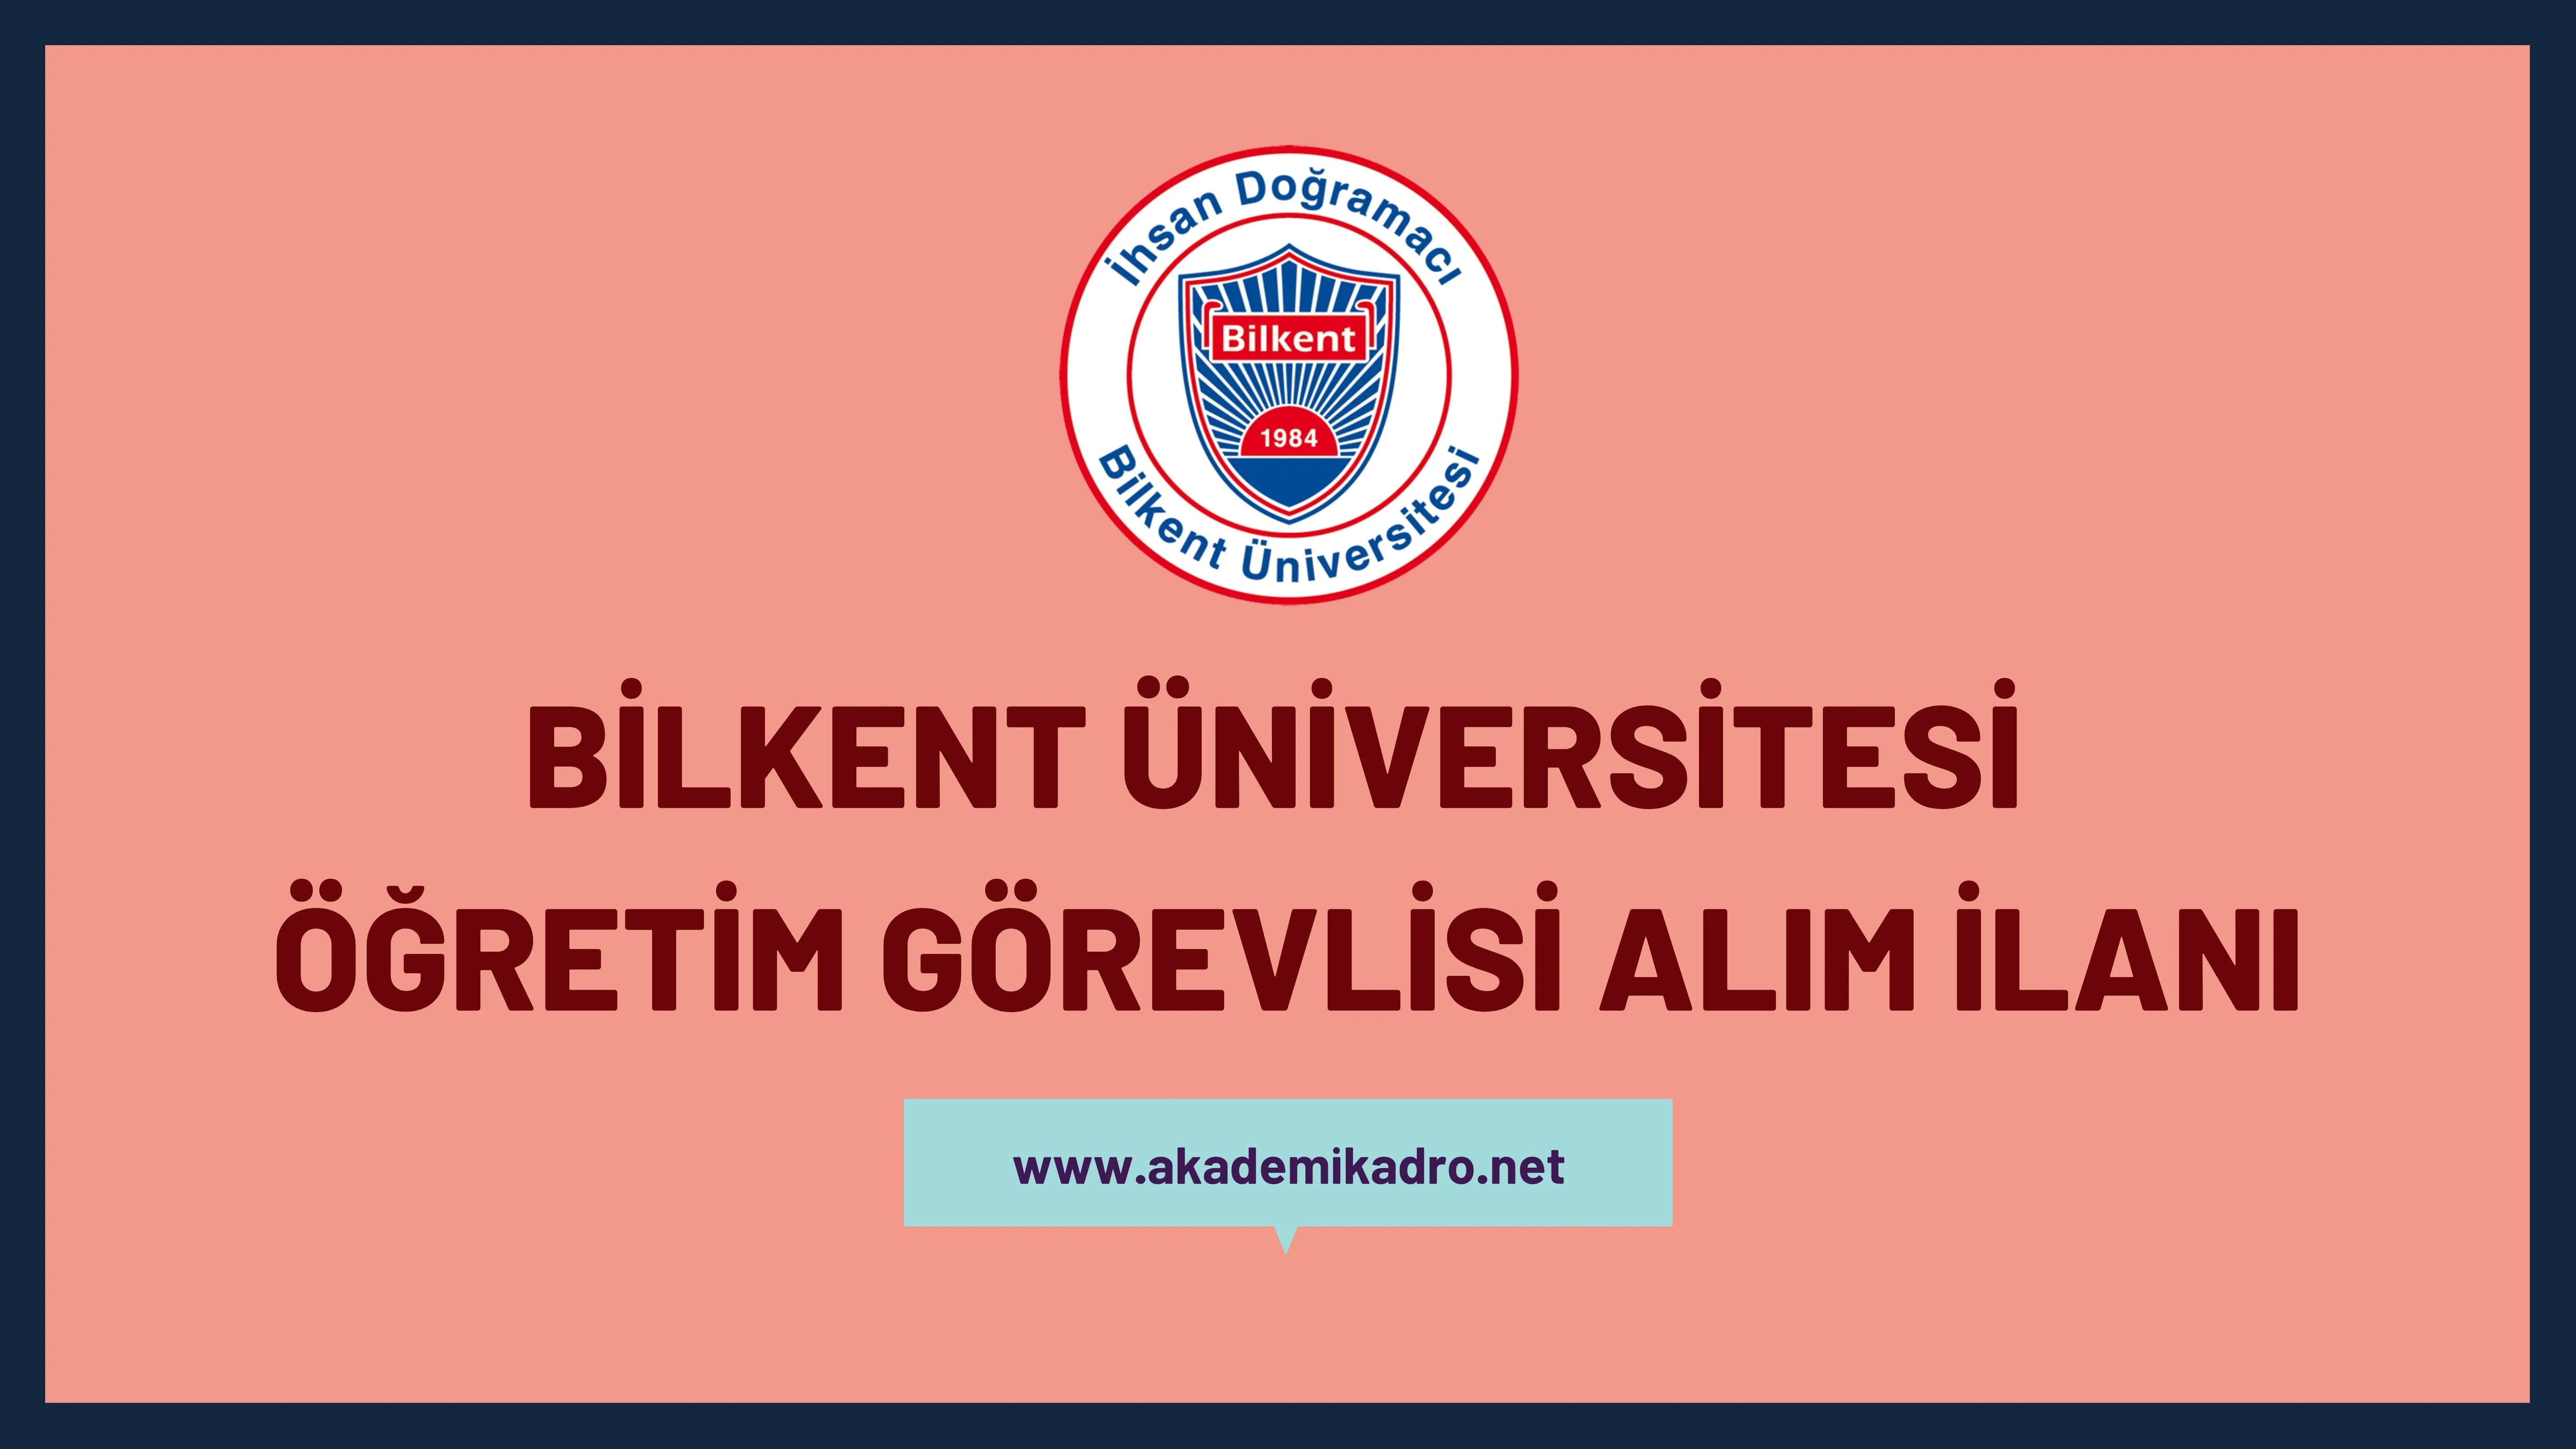 İhsan Doğramacı Bilkent Üniversitesi Öğretim görevlisi alacak.